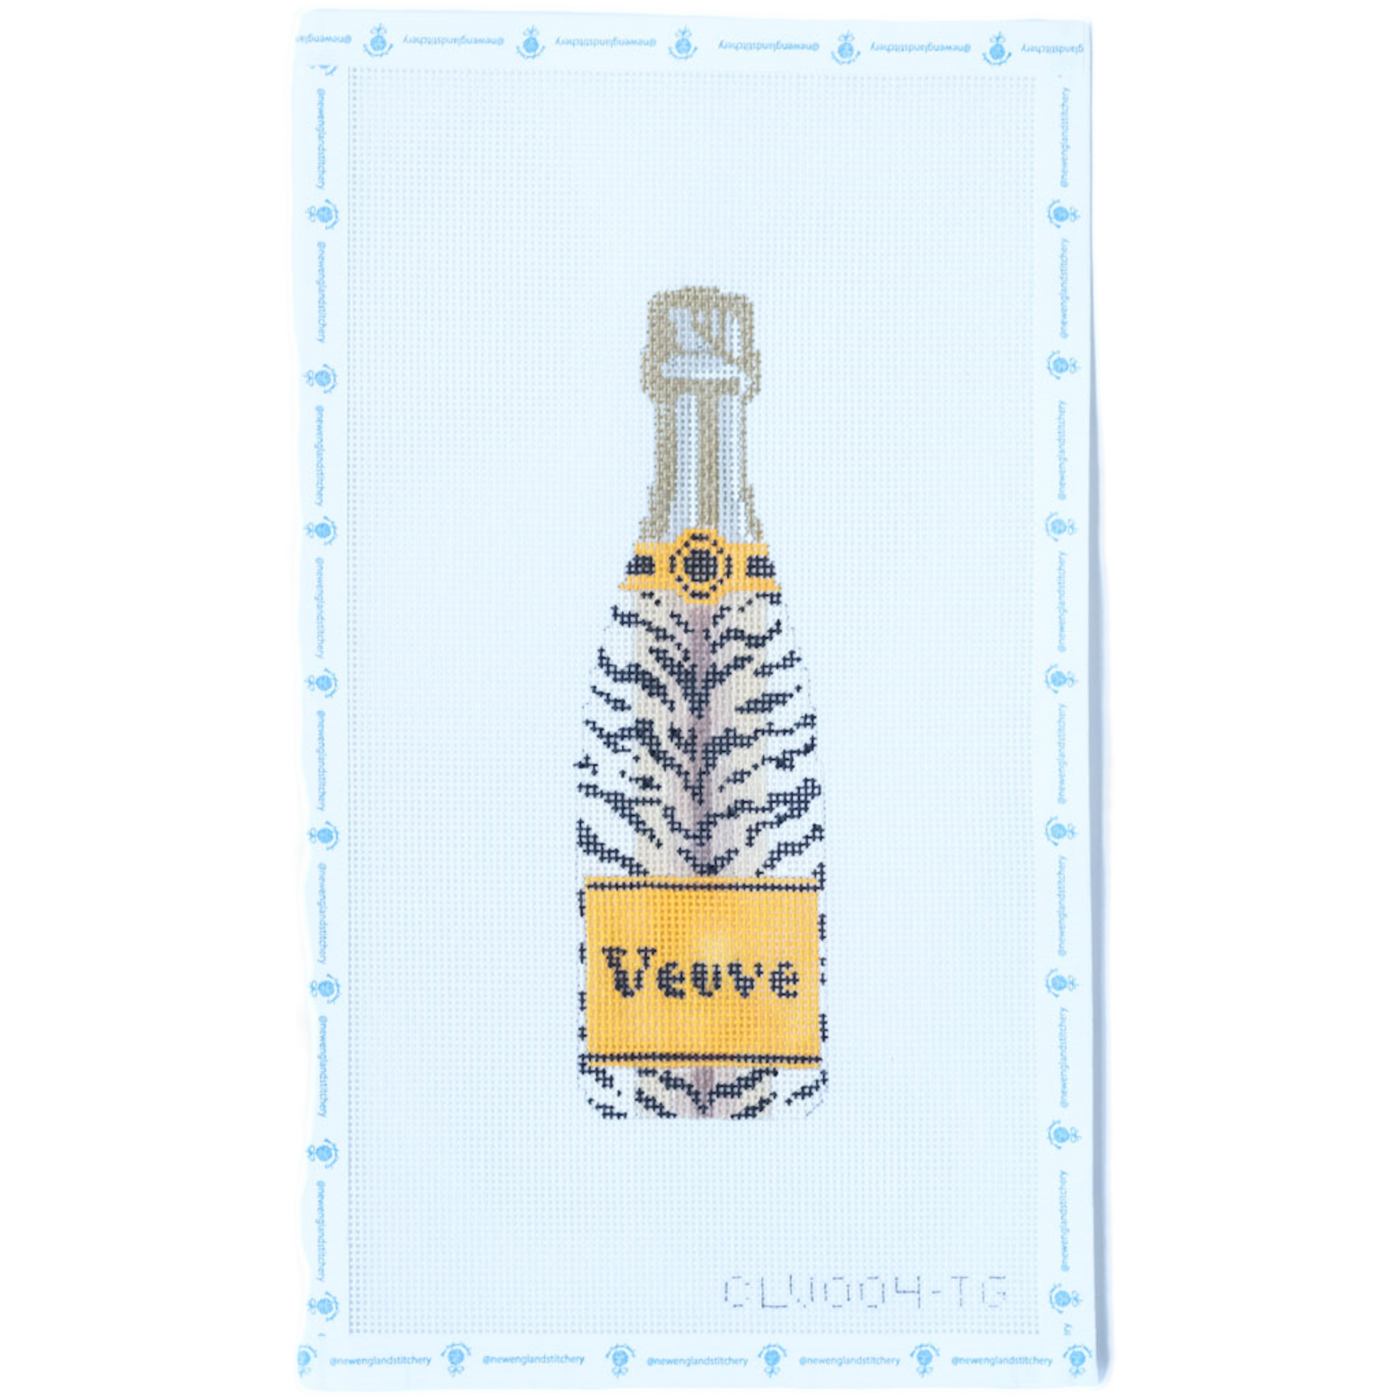 Tiger Veuve Bottle